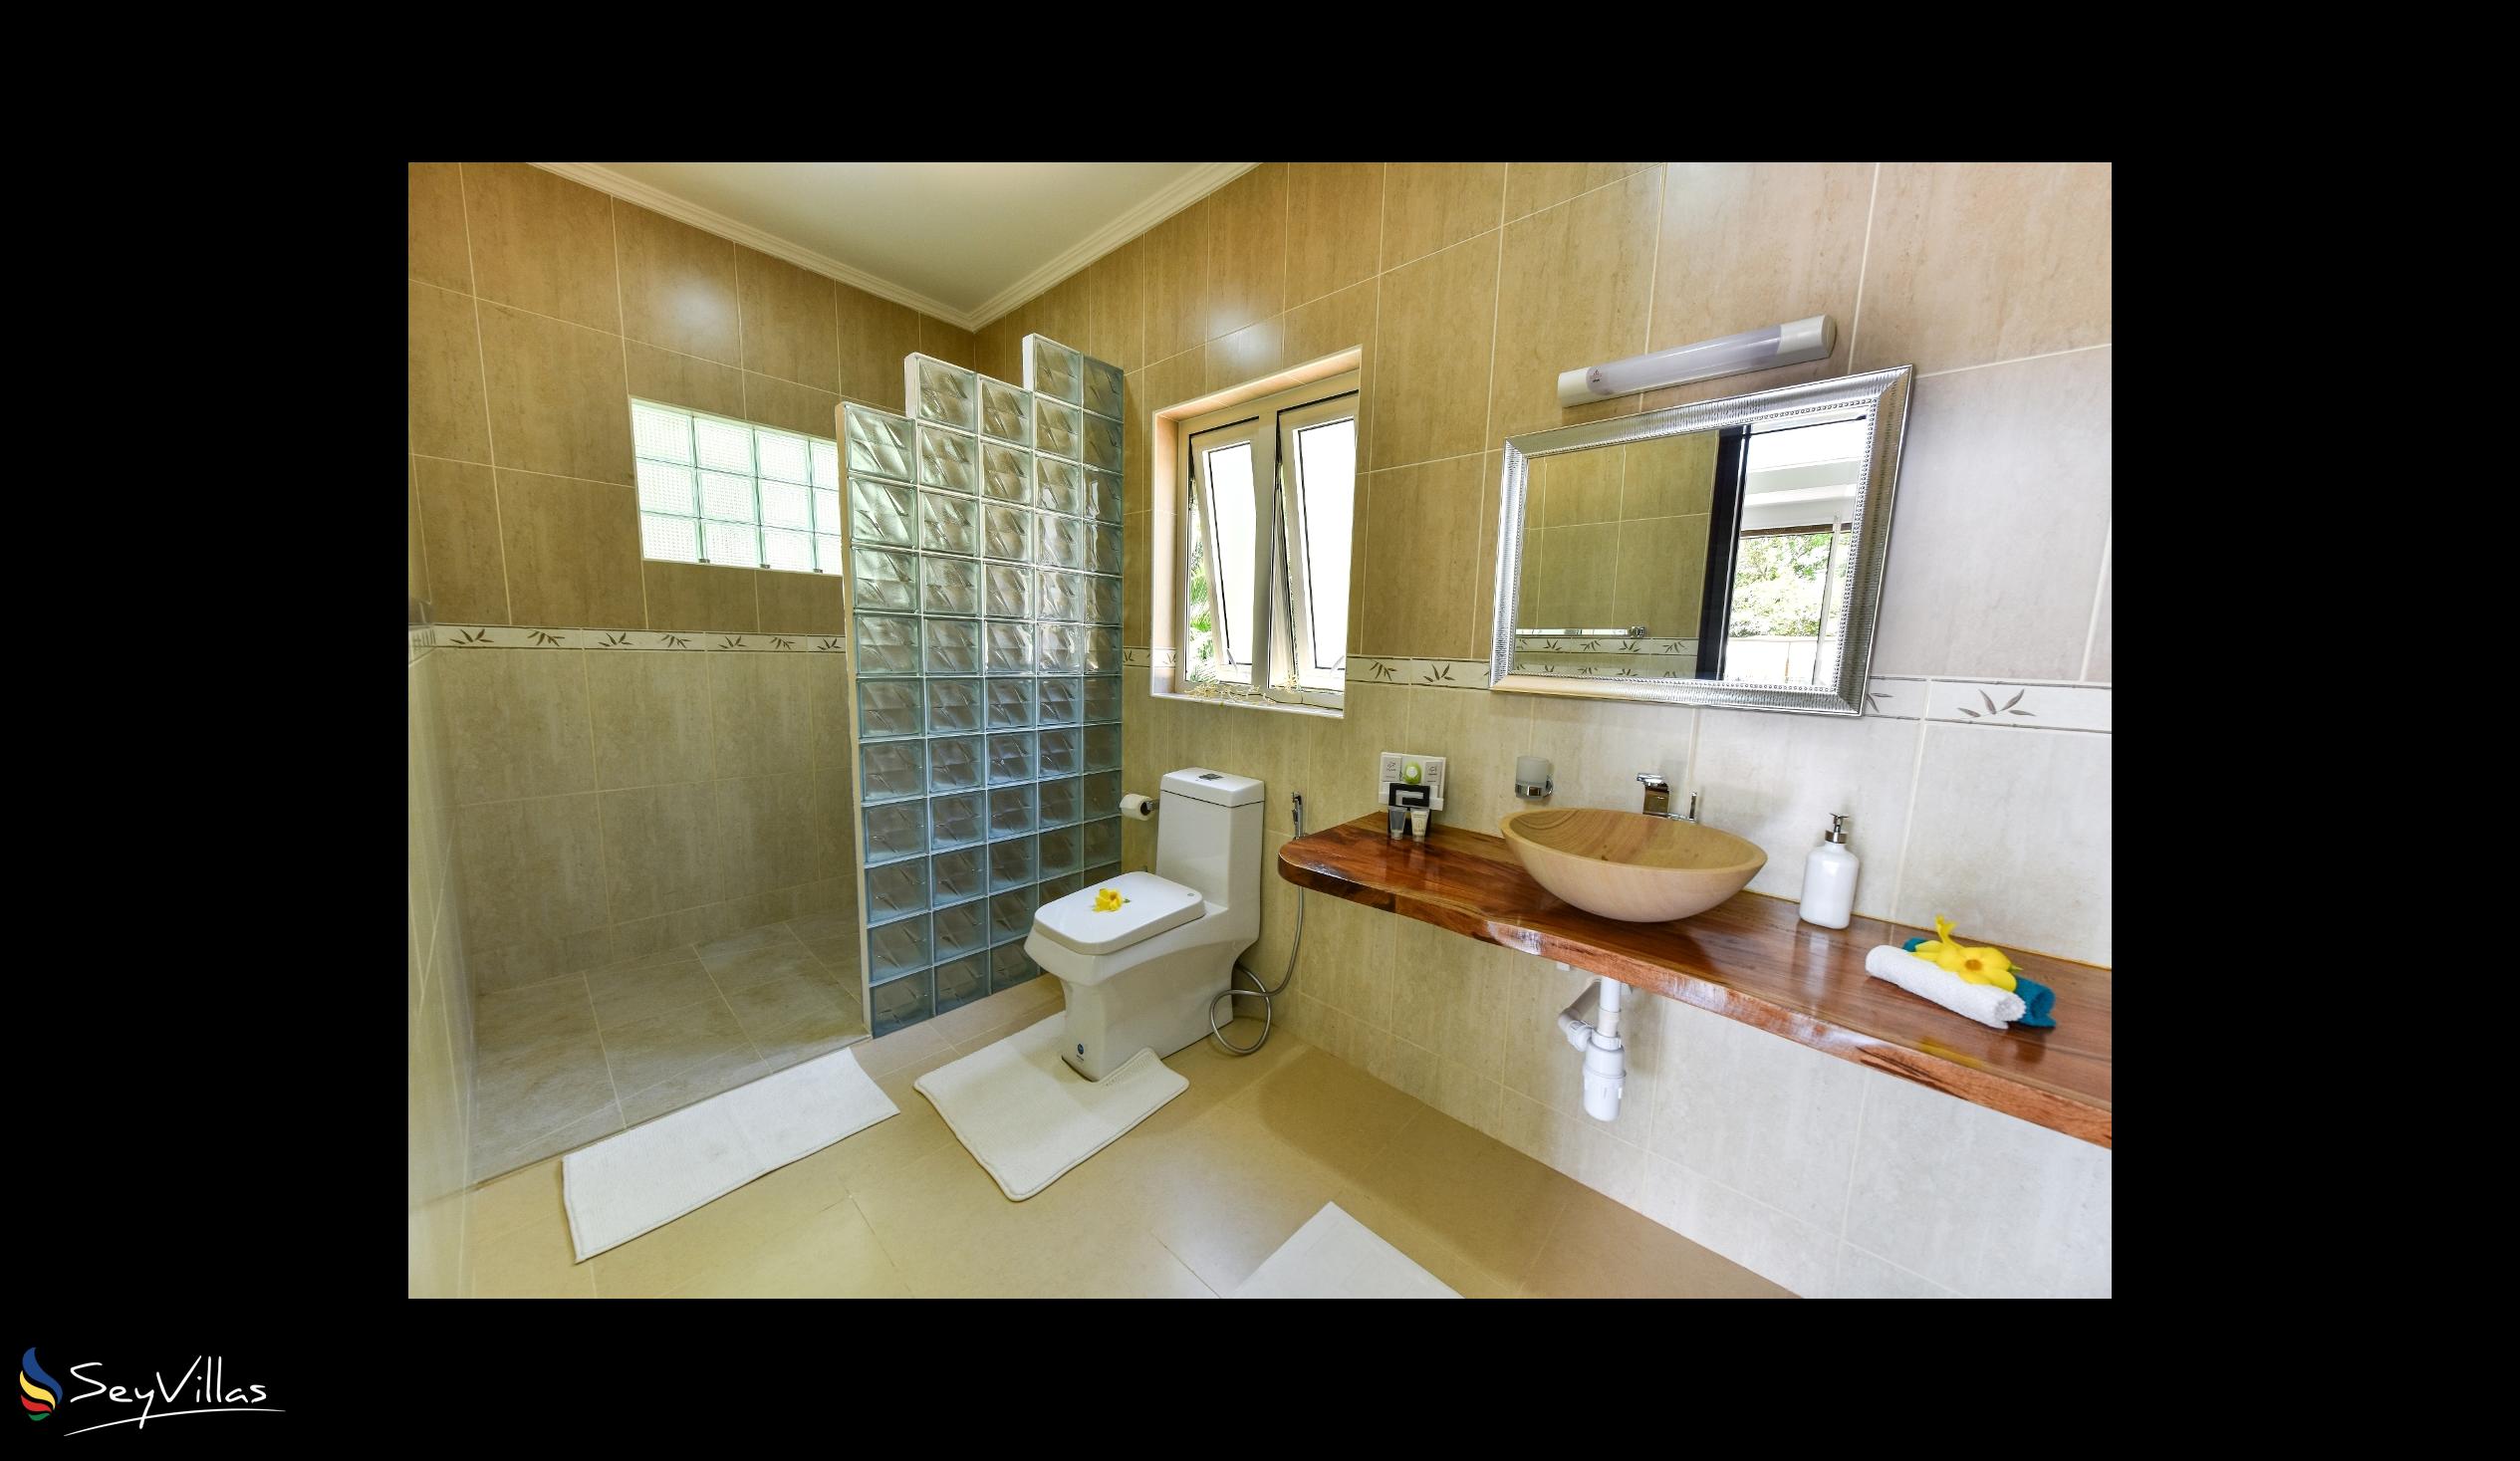 Foto 18: Moulin Kann Villas - Appartamento con 1 camera da letto - Mahé (Seychelles)